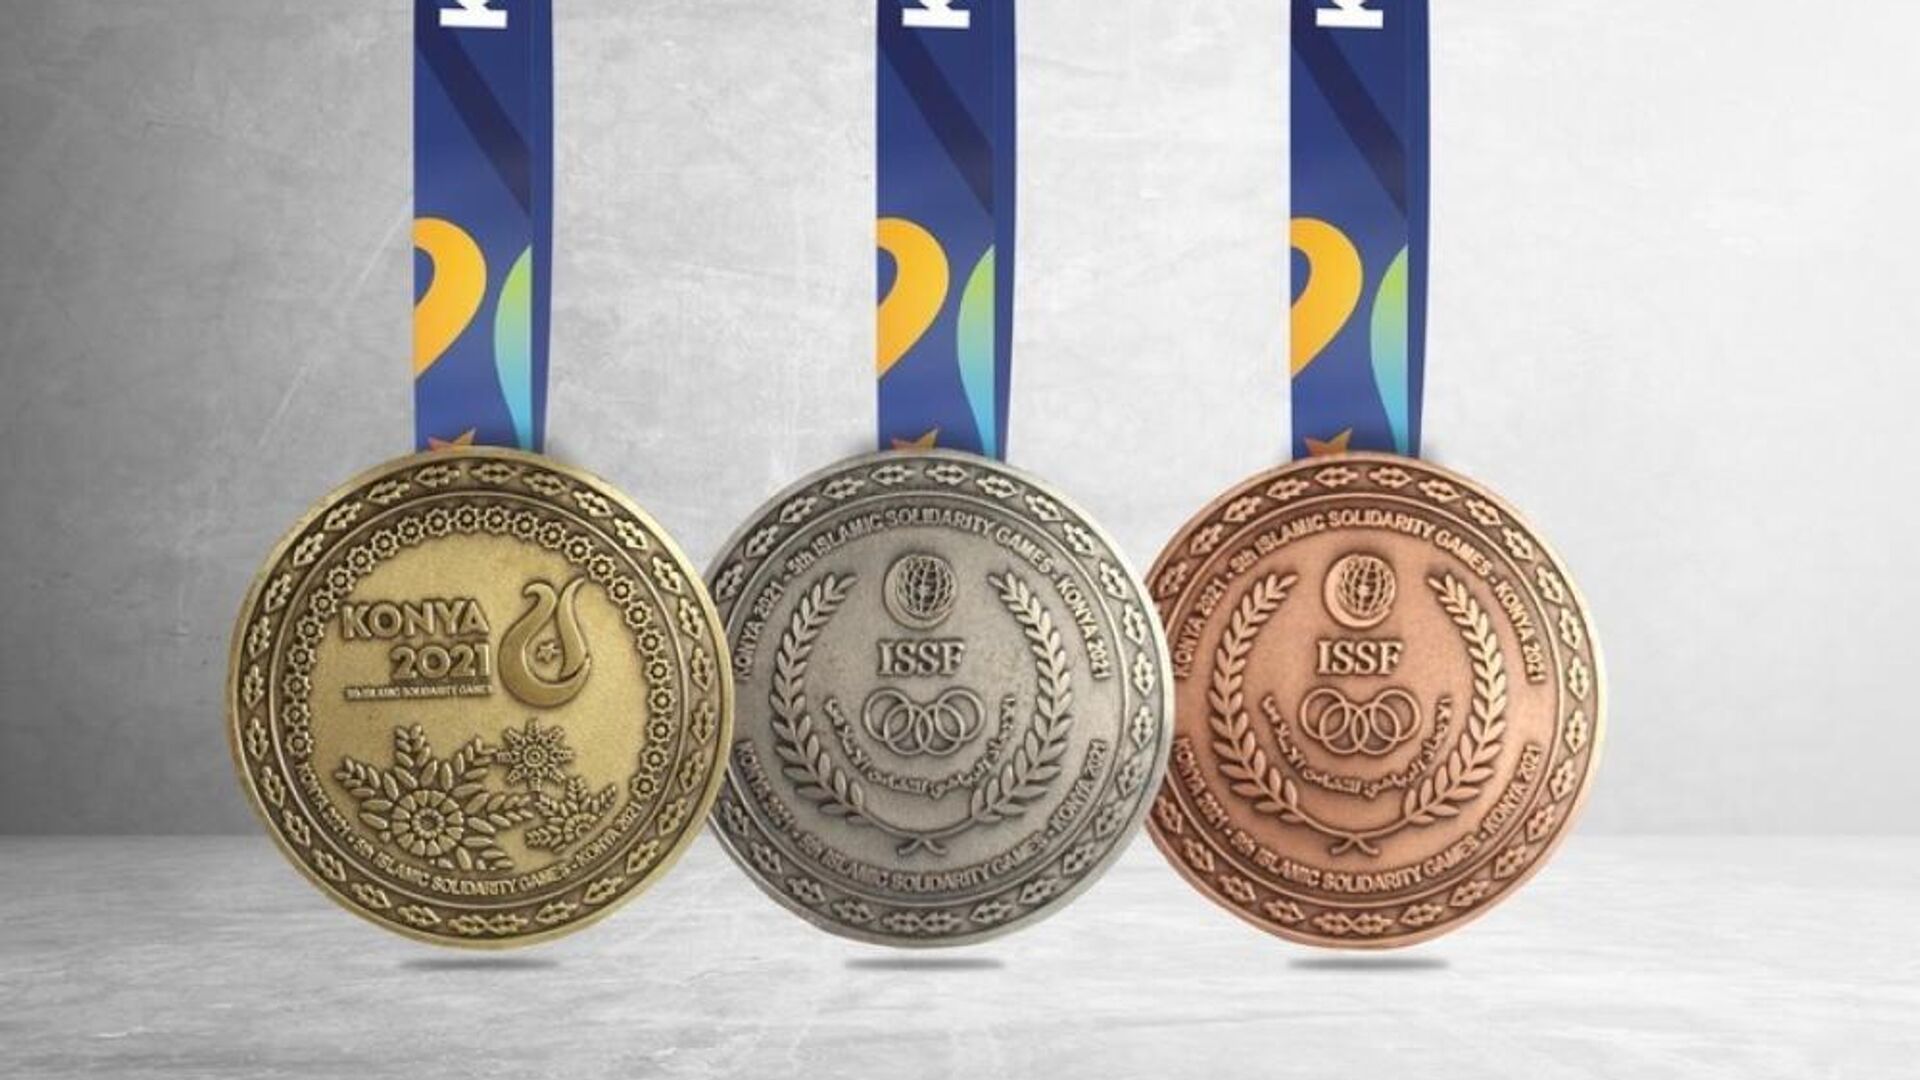 Медали Исламских игр солидарности Конья-2021 - Sputnik Азербайджан, 1920, 17.08.2022